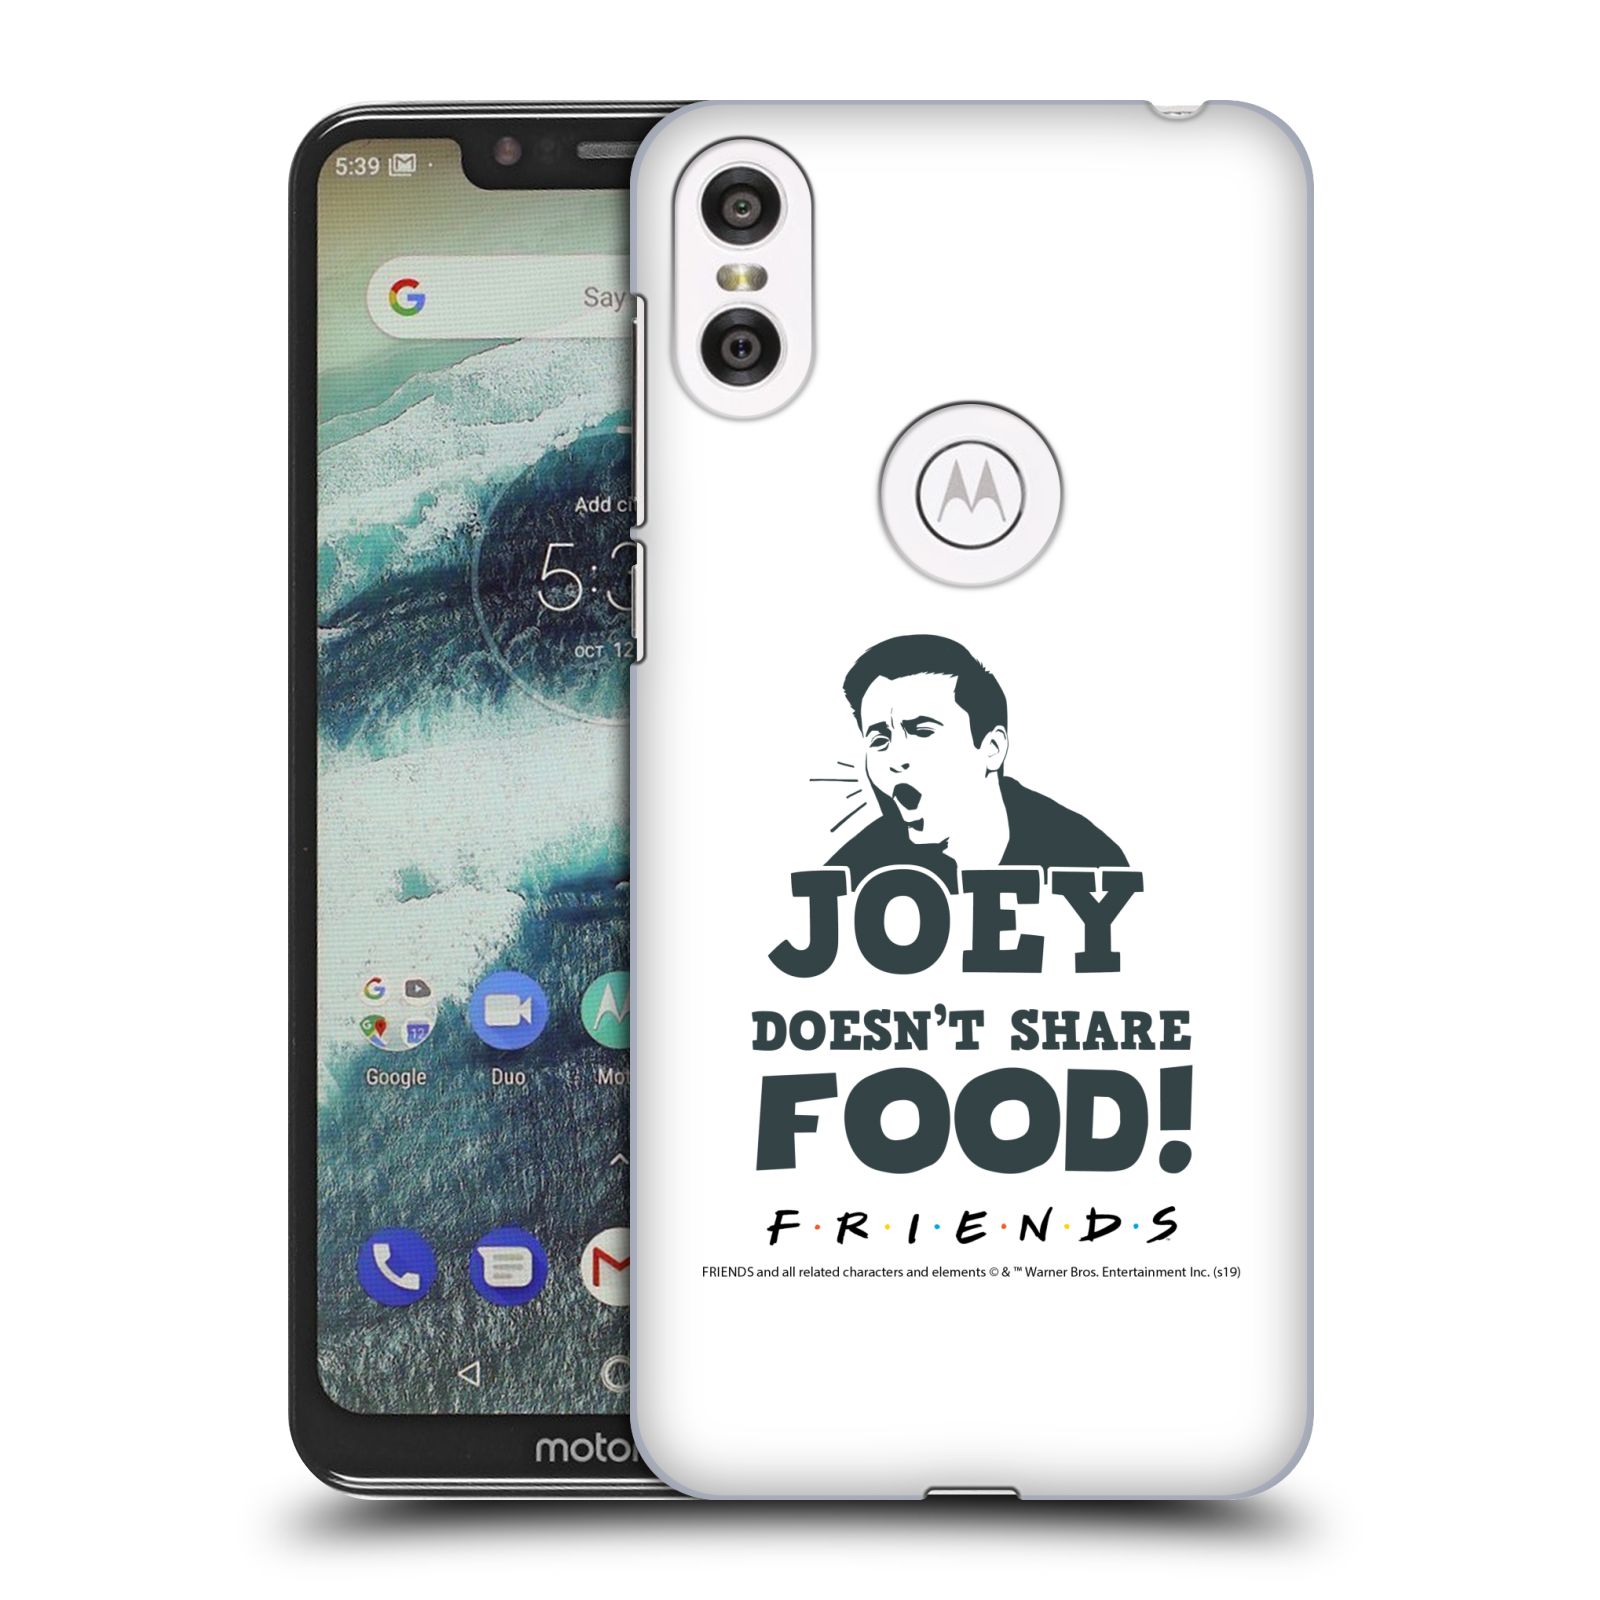 Pouzdro na mobil Motorola Moto ONE - HEAD CASE - Seriál Přátelé - Joey se o jídlo nedělí